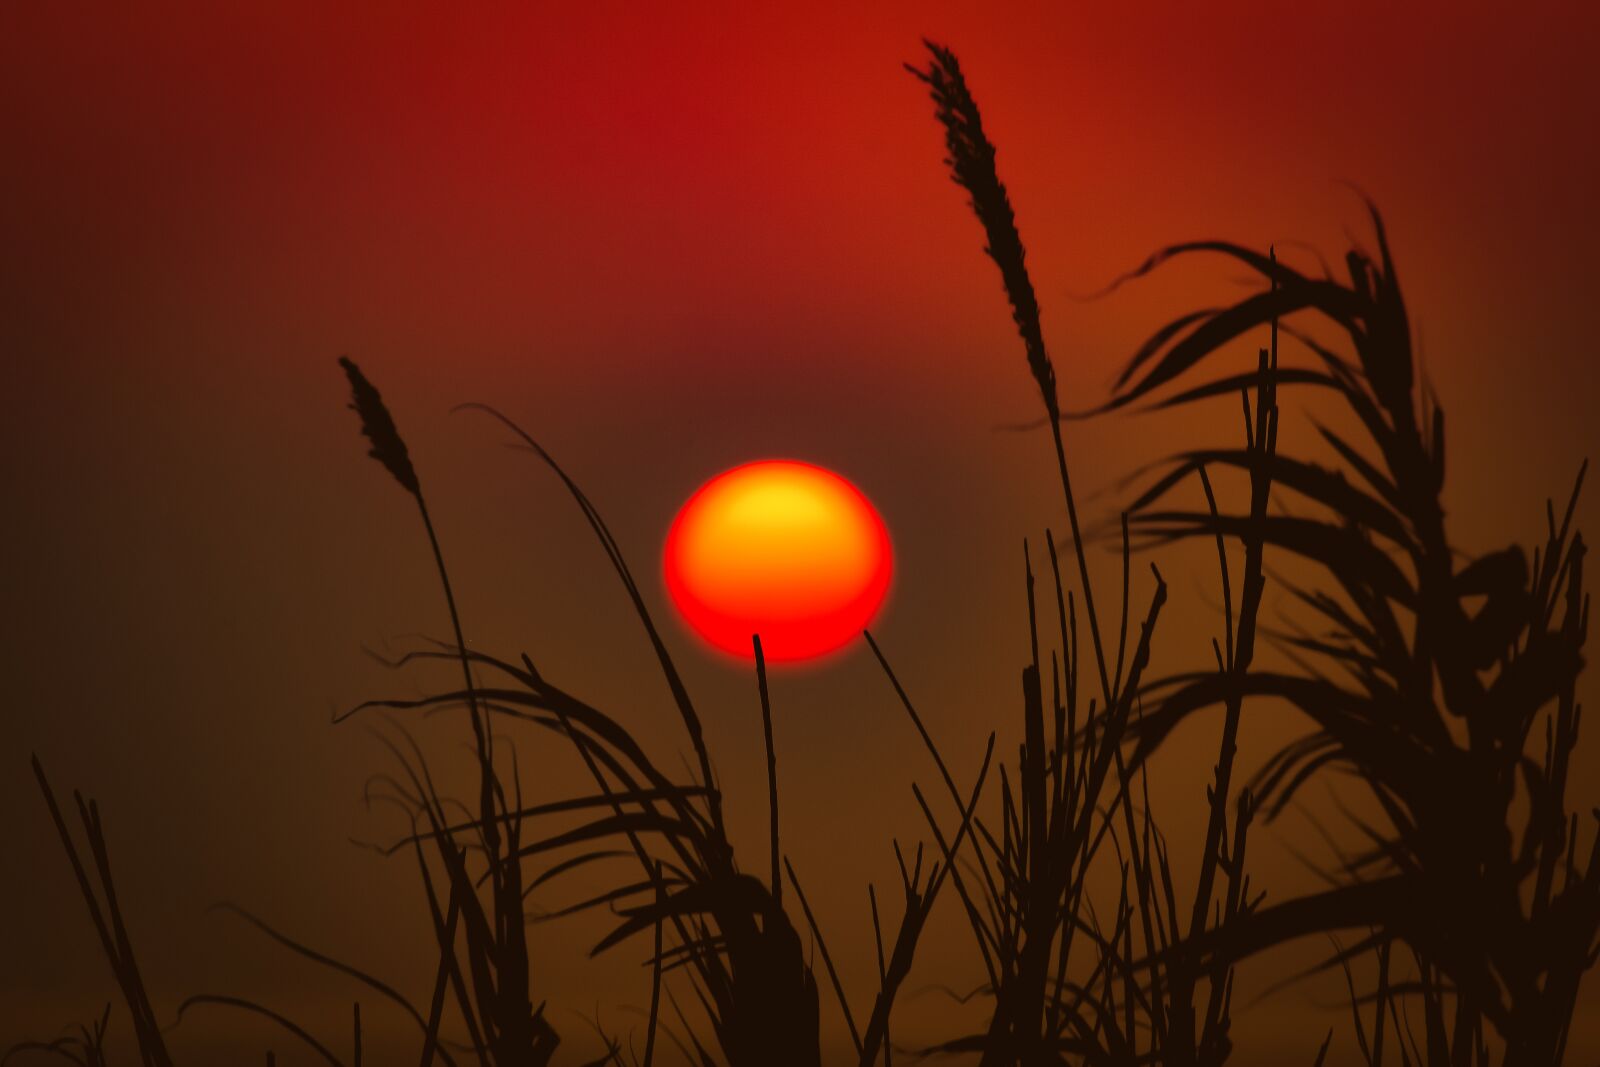 Nikon D3300 sample photo. Reeds, sun, sunset photography